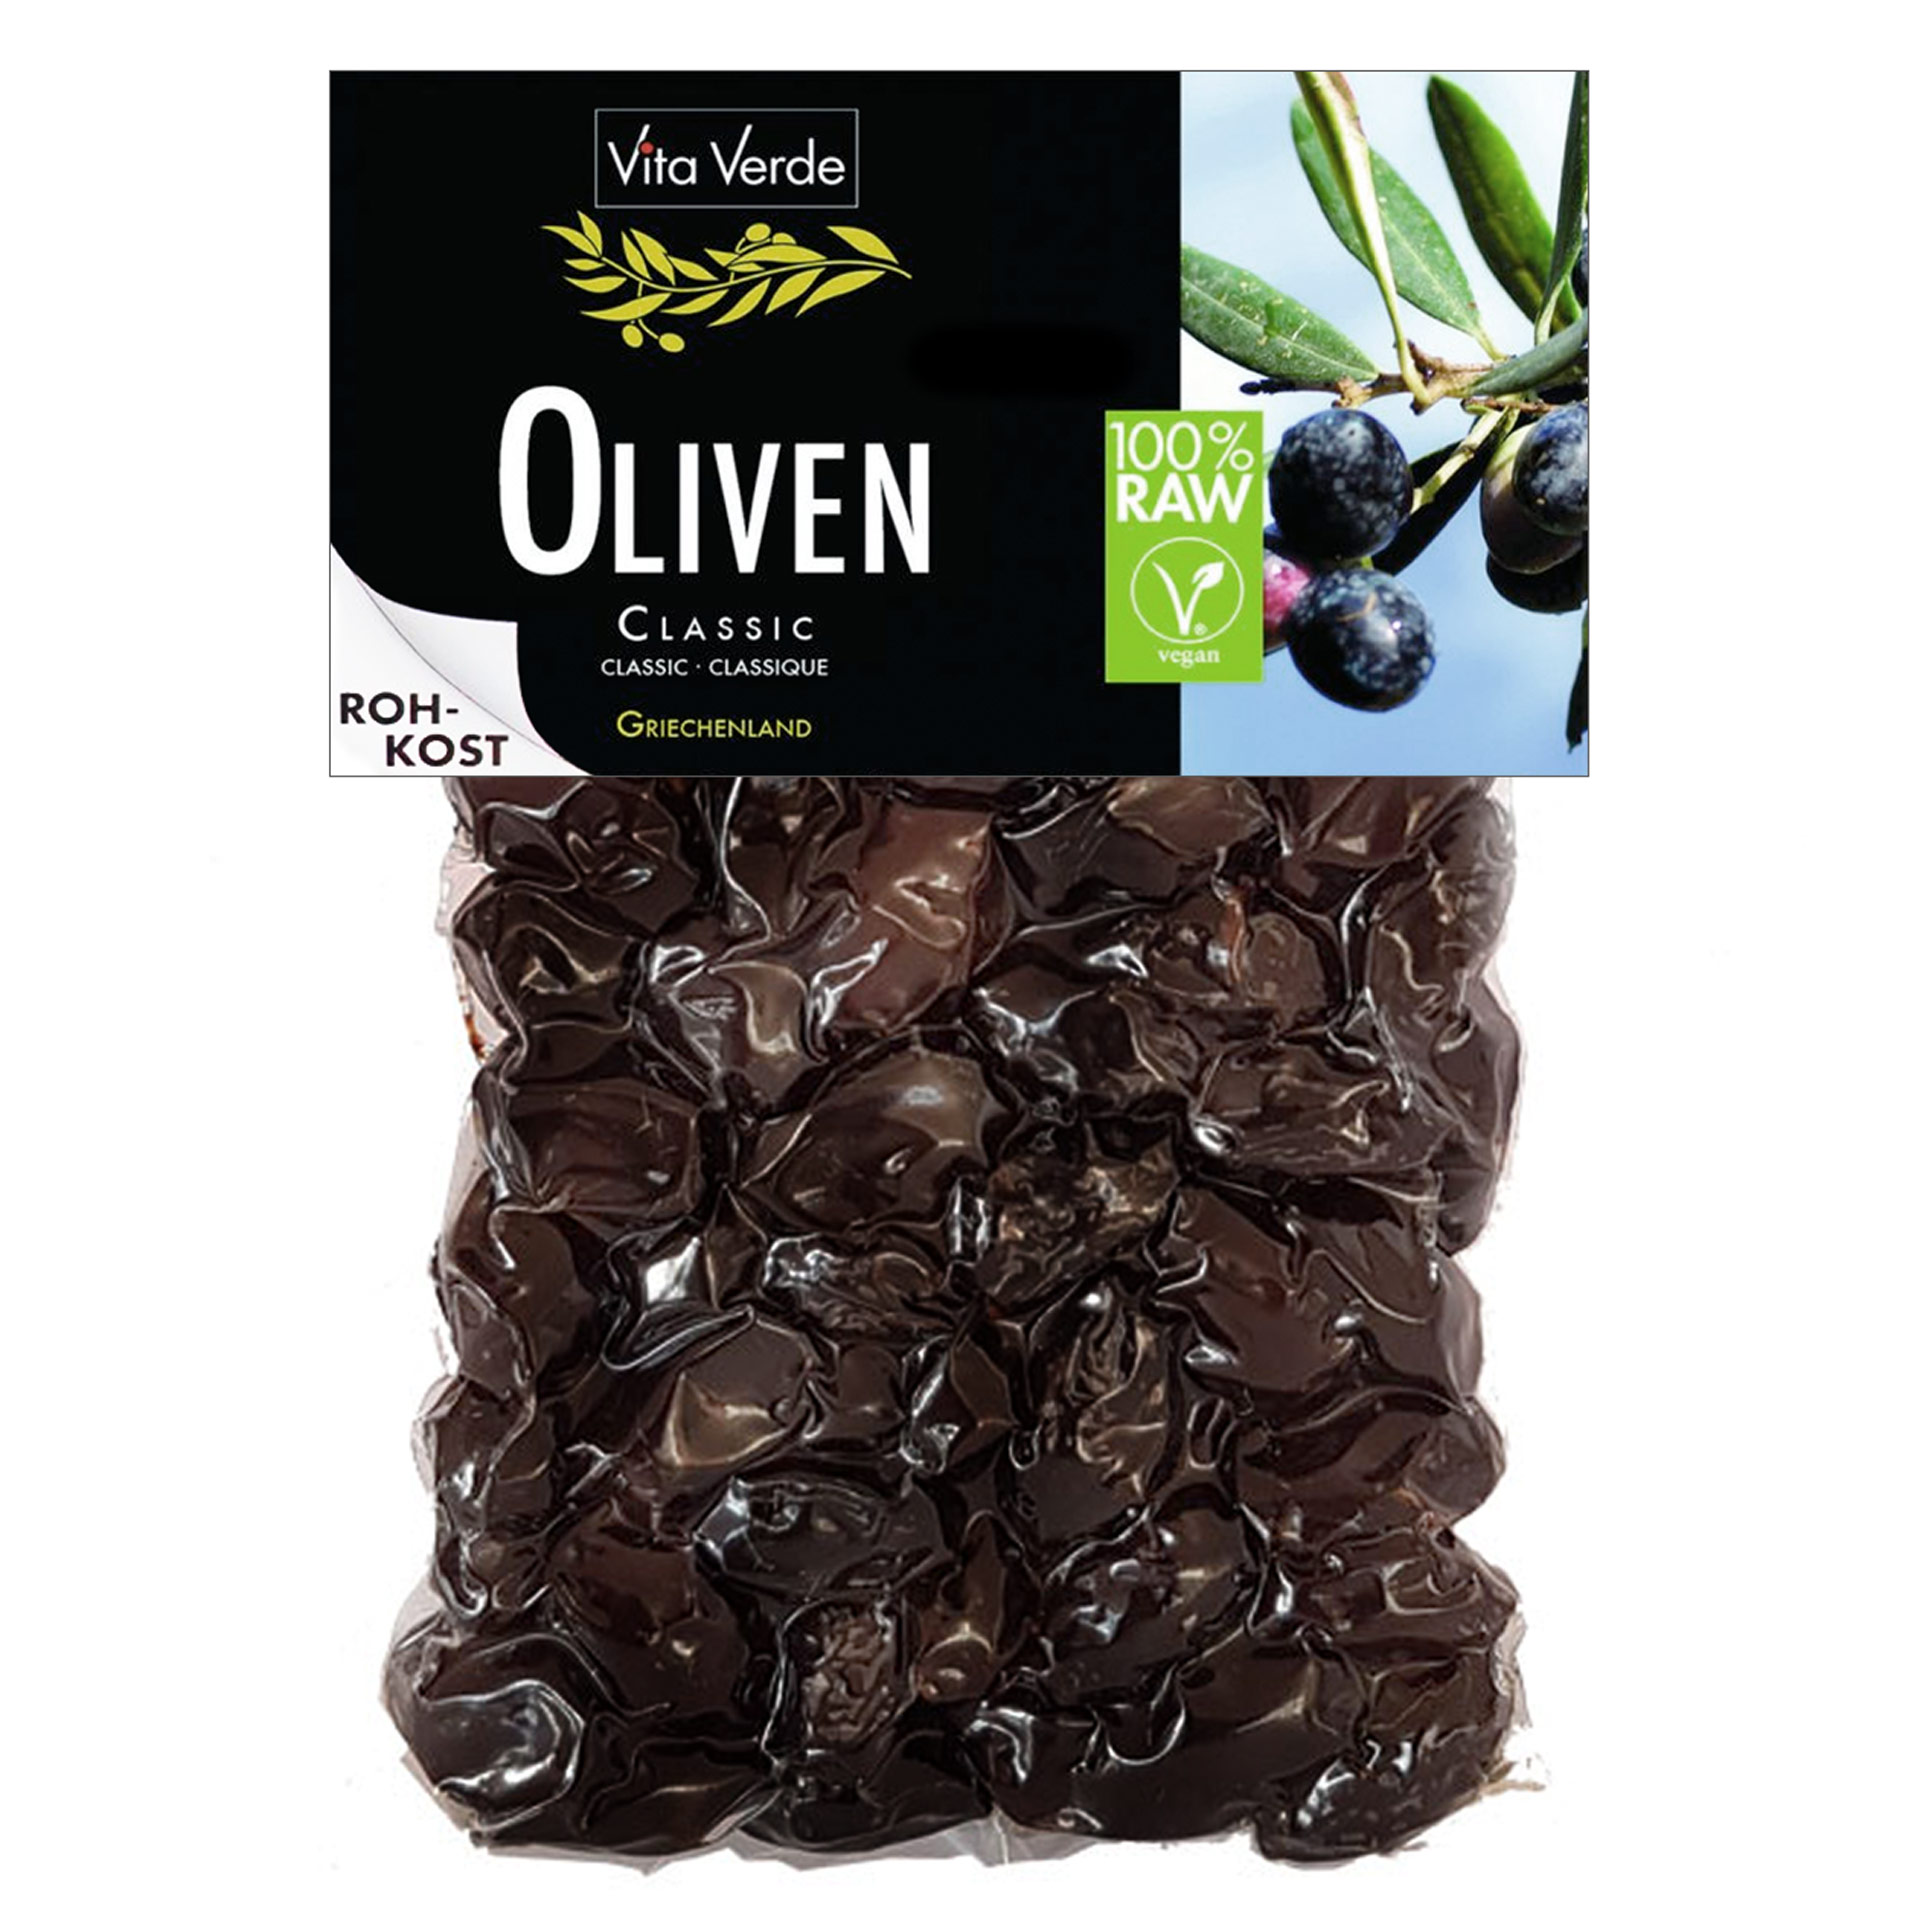 Vita Verde Oliven Thrumba schwarze Oliven mit Stein